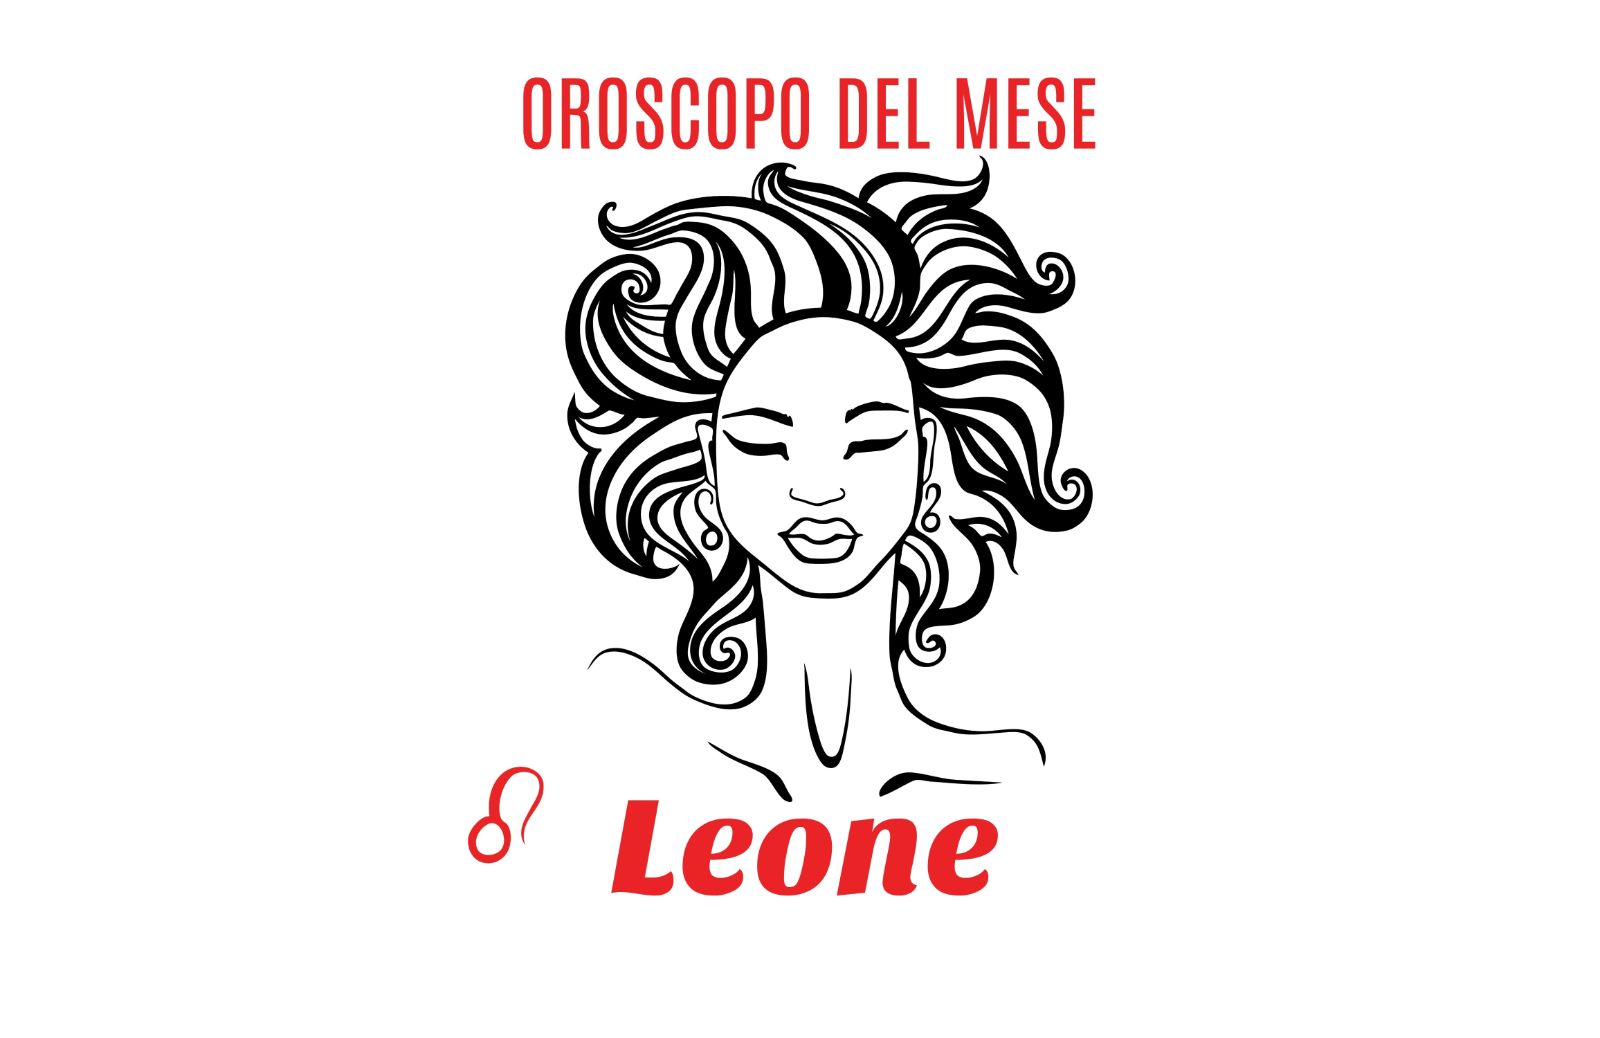 Oroscopo del mese: Leone - febbraio 2019